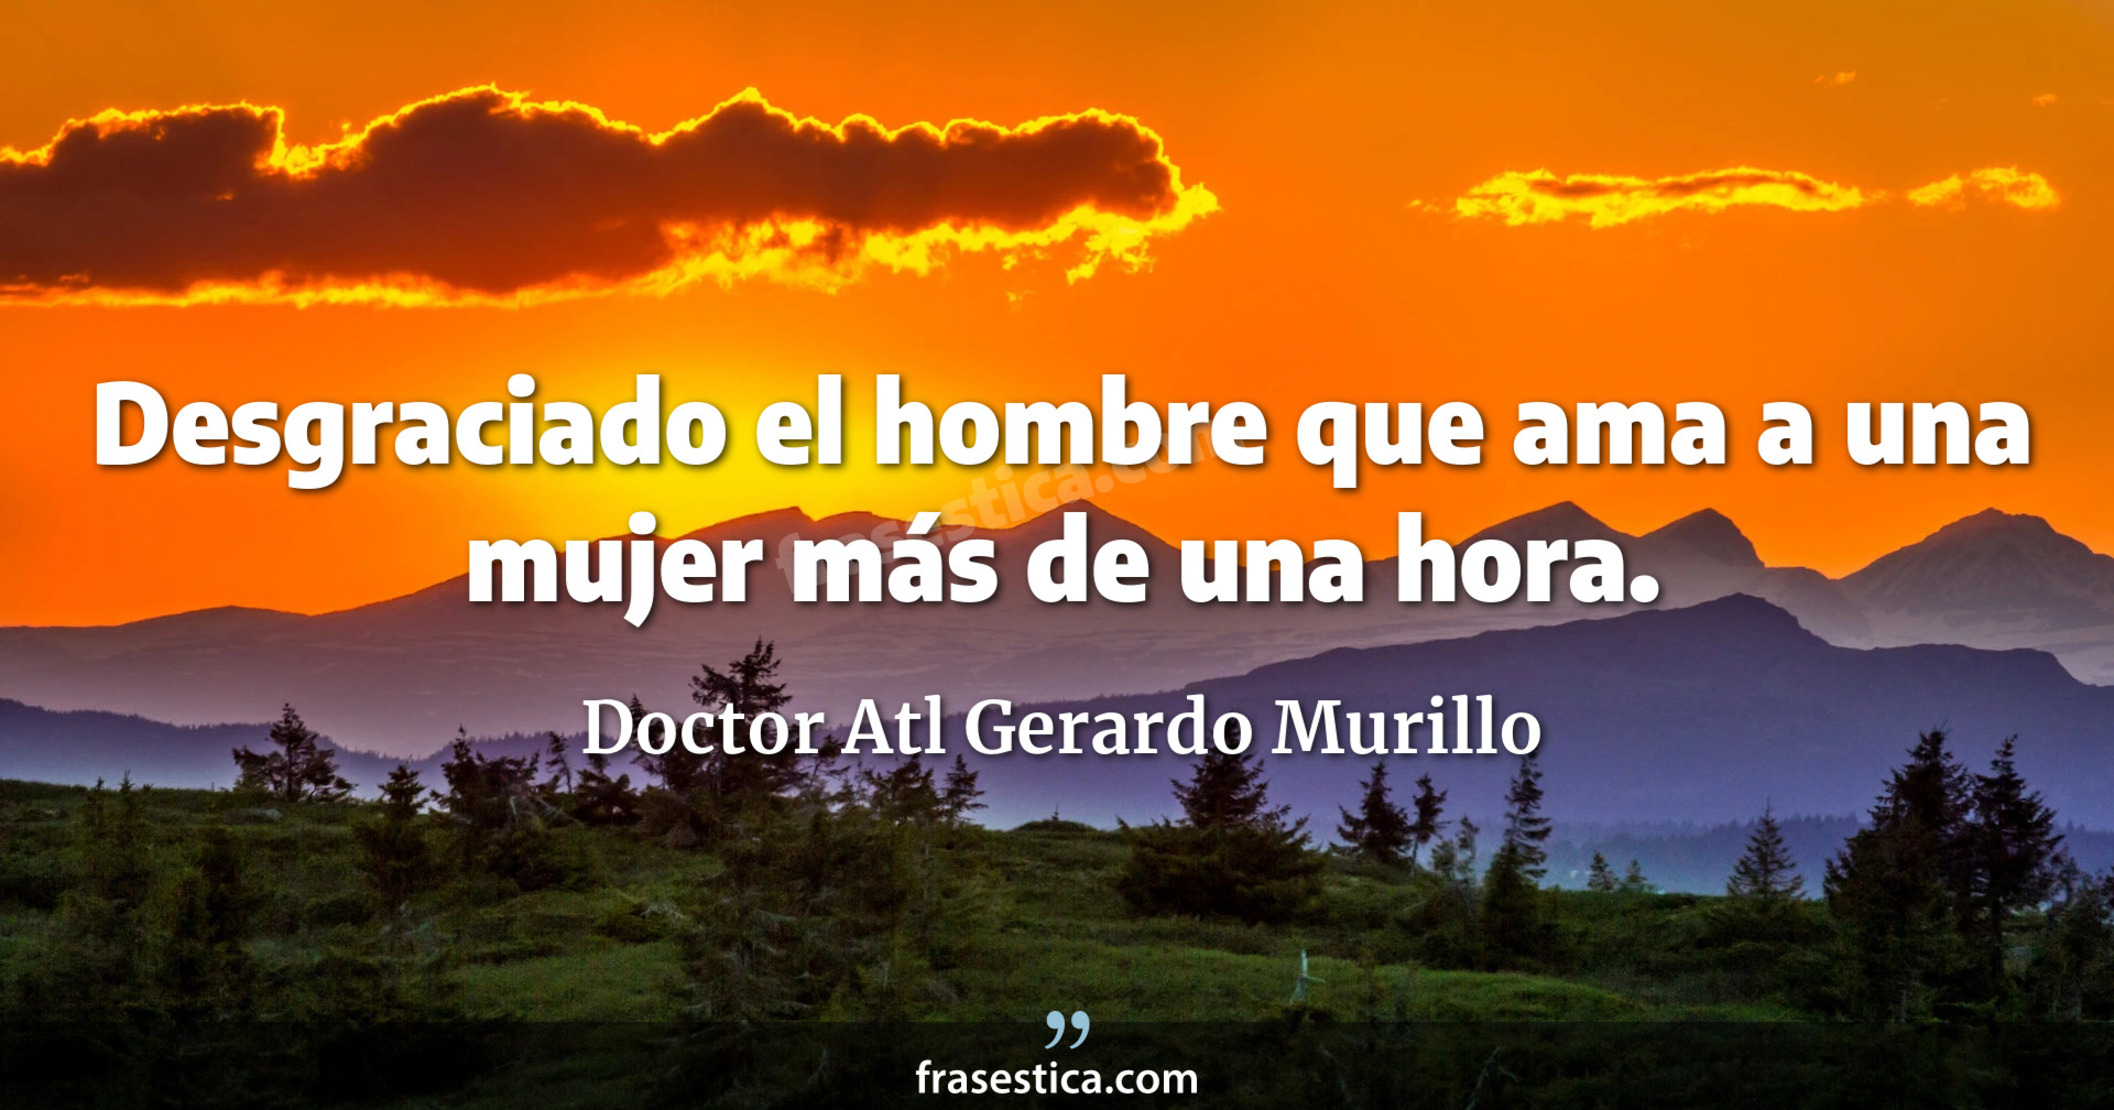 Desgraciado el hombre que ama a una mujer más de una hora. - Doctor Atl Gerardo Murillo